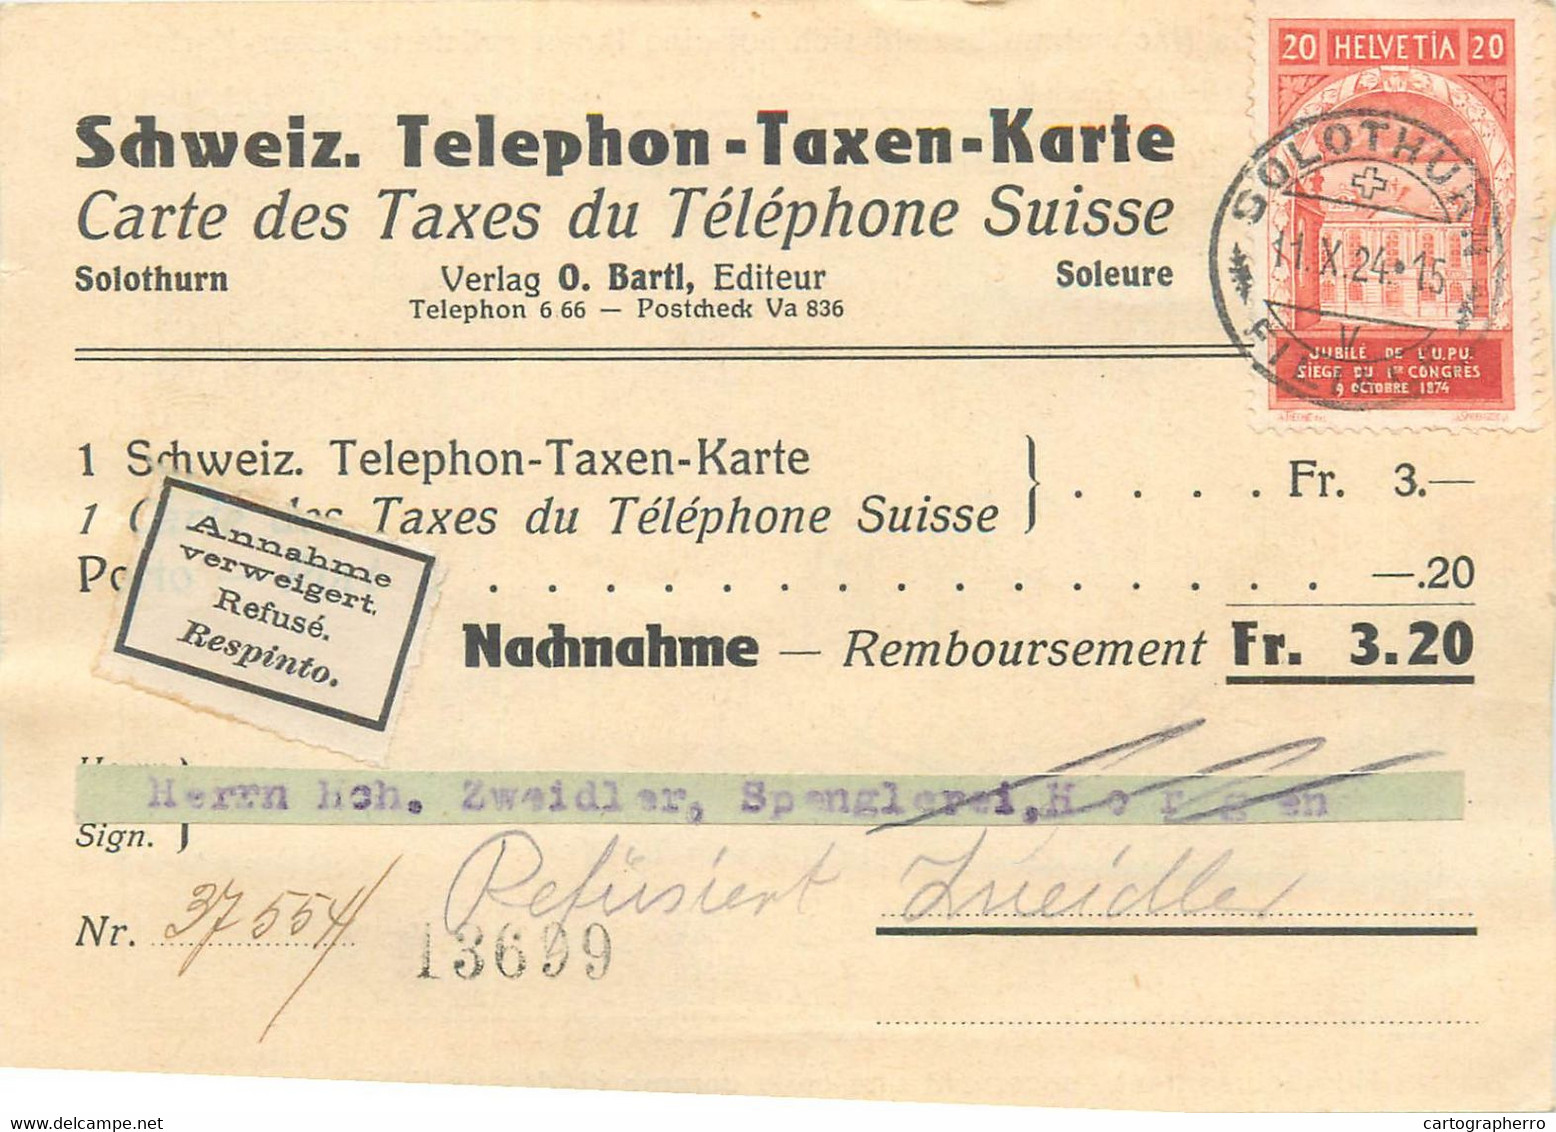 Carte Des Taxes Du Telephone Suisse 1924 Schweiz Telephon Taxen Karte Solothurn Switzerland Map - Telegrafo